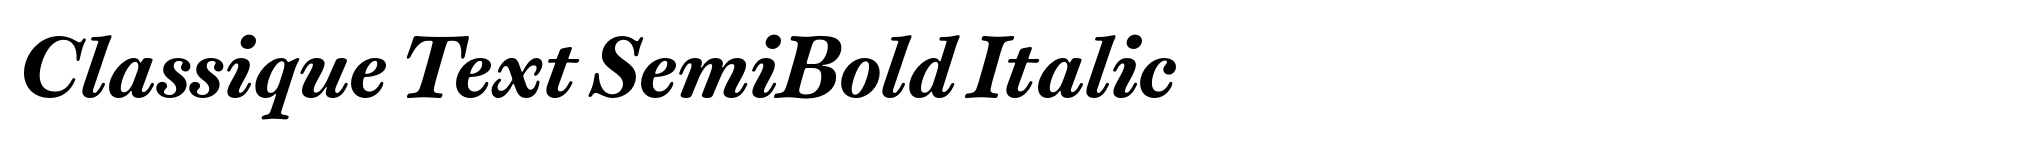 Classique Text SemiBold Italic image